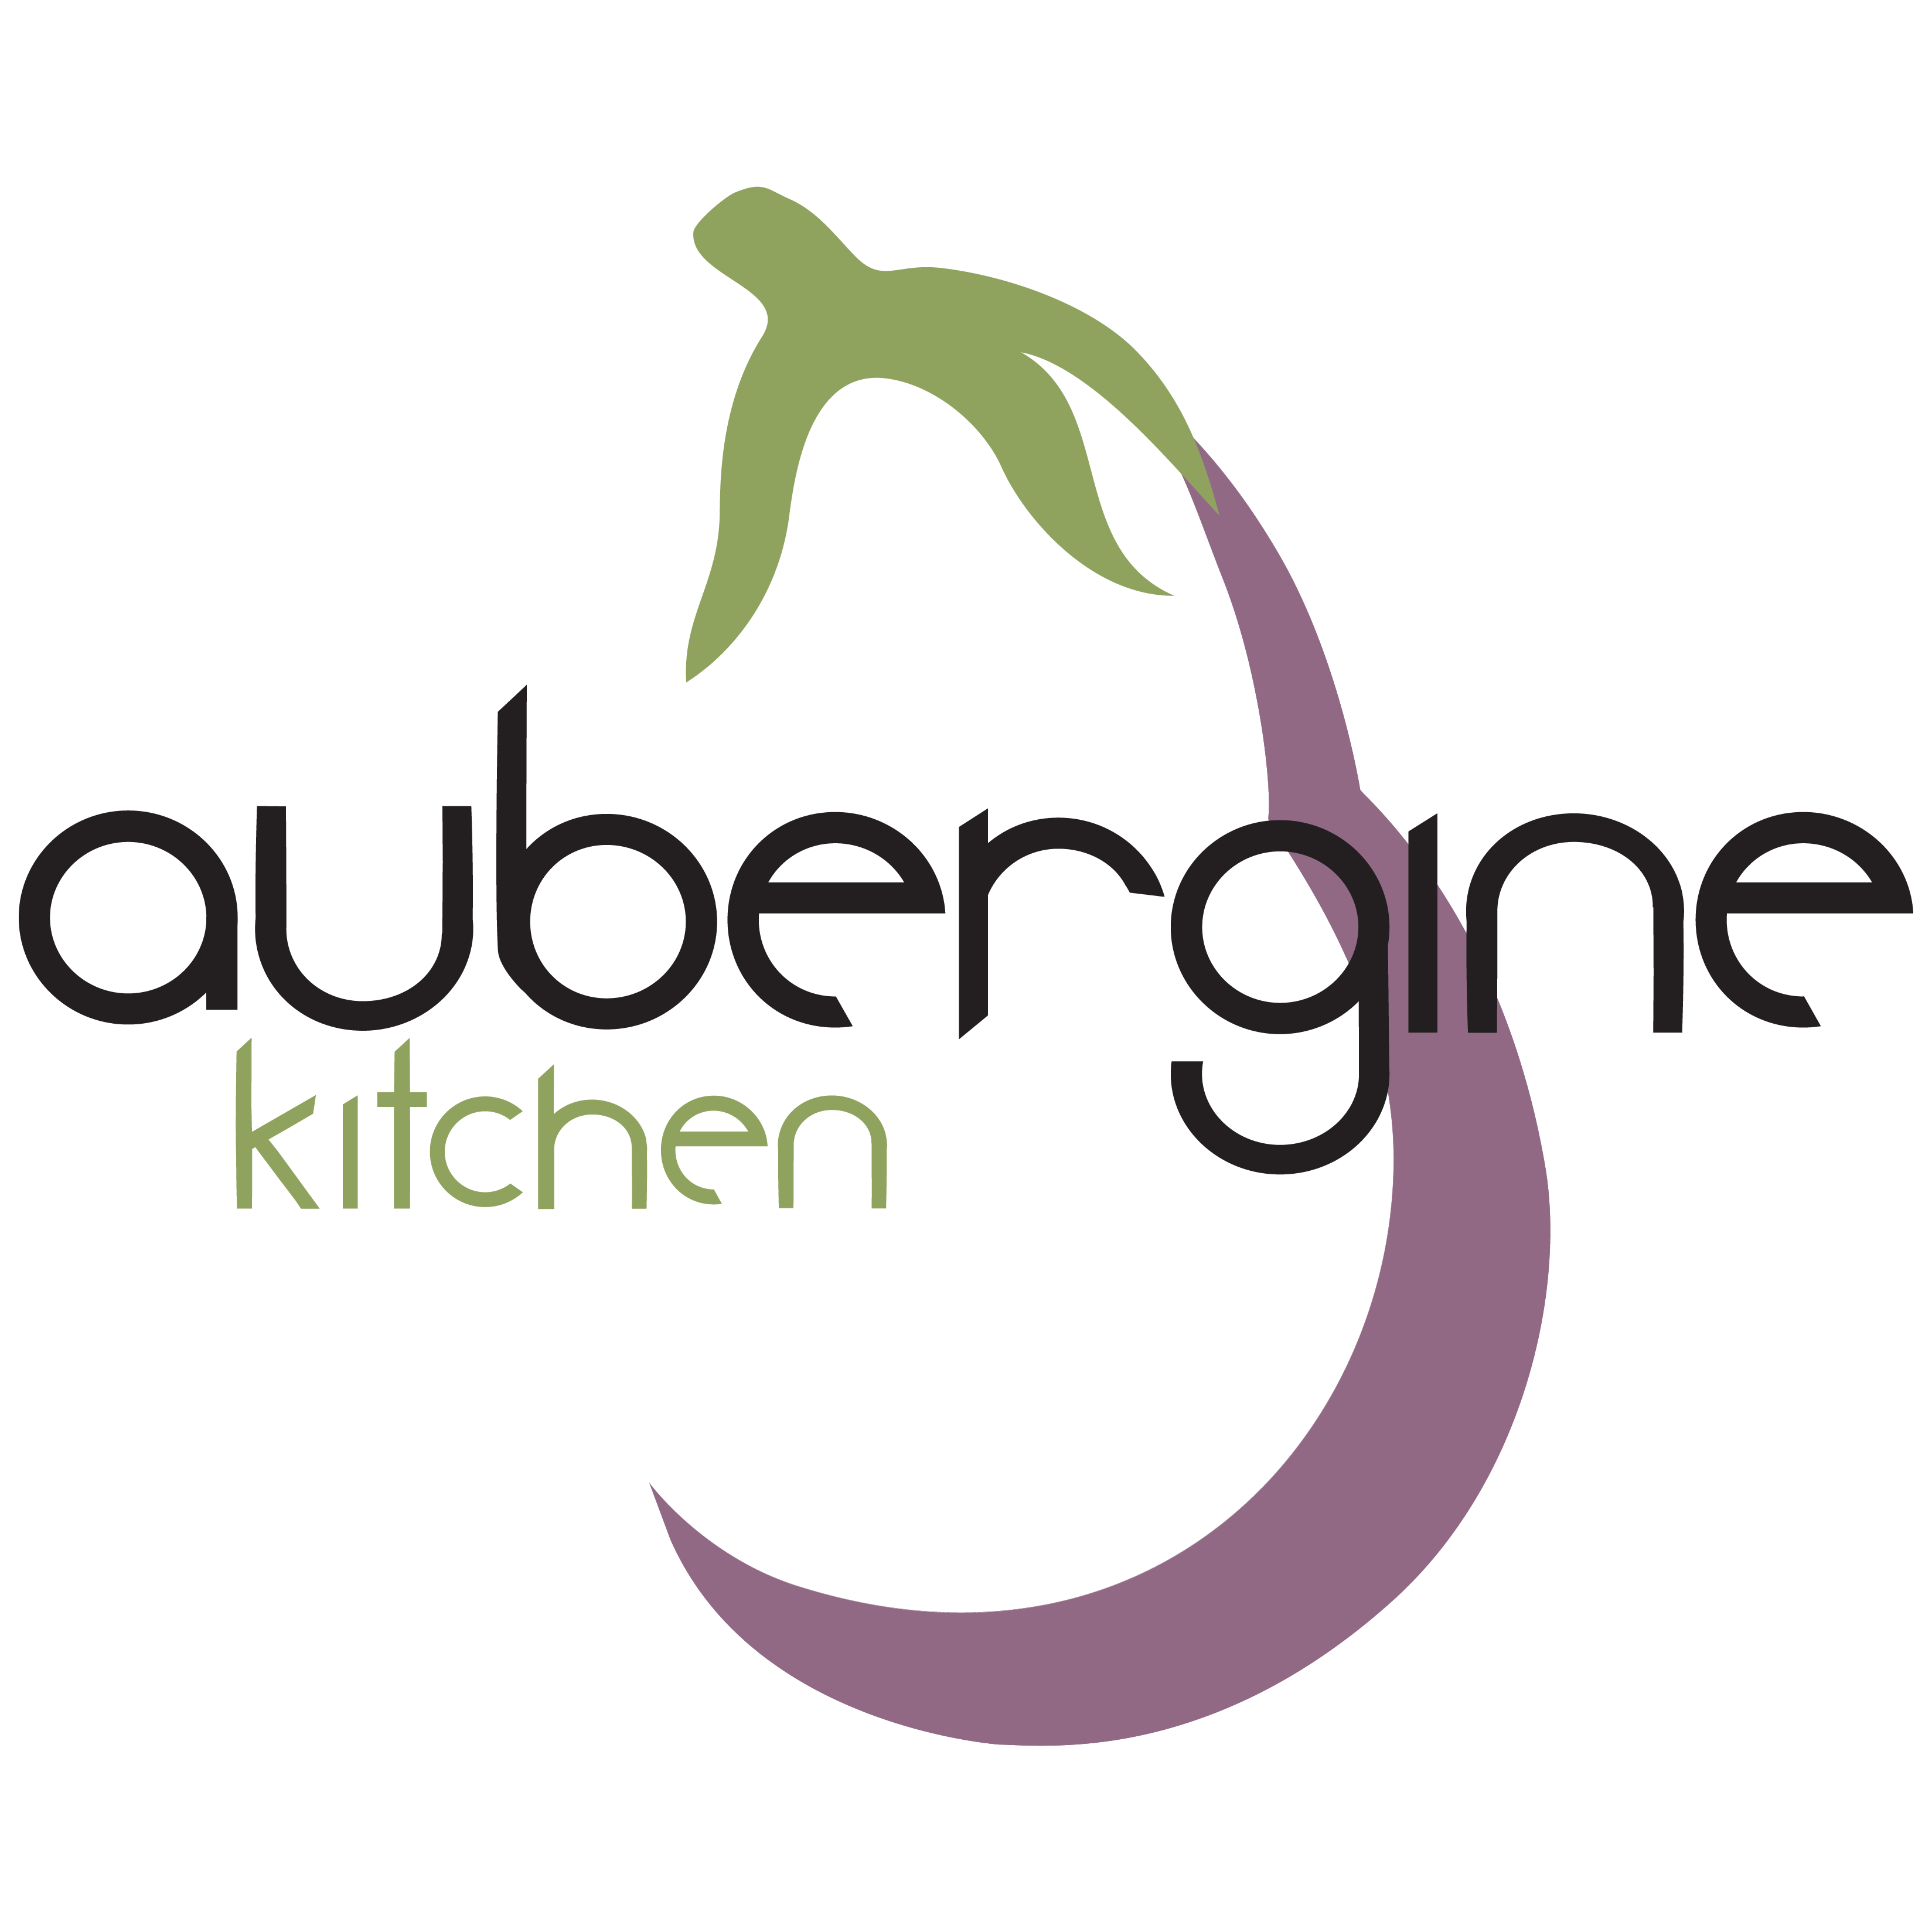 aubergine kitchen app logo